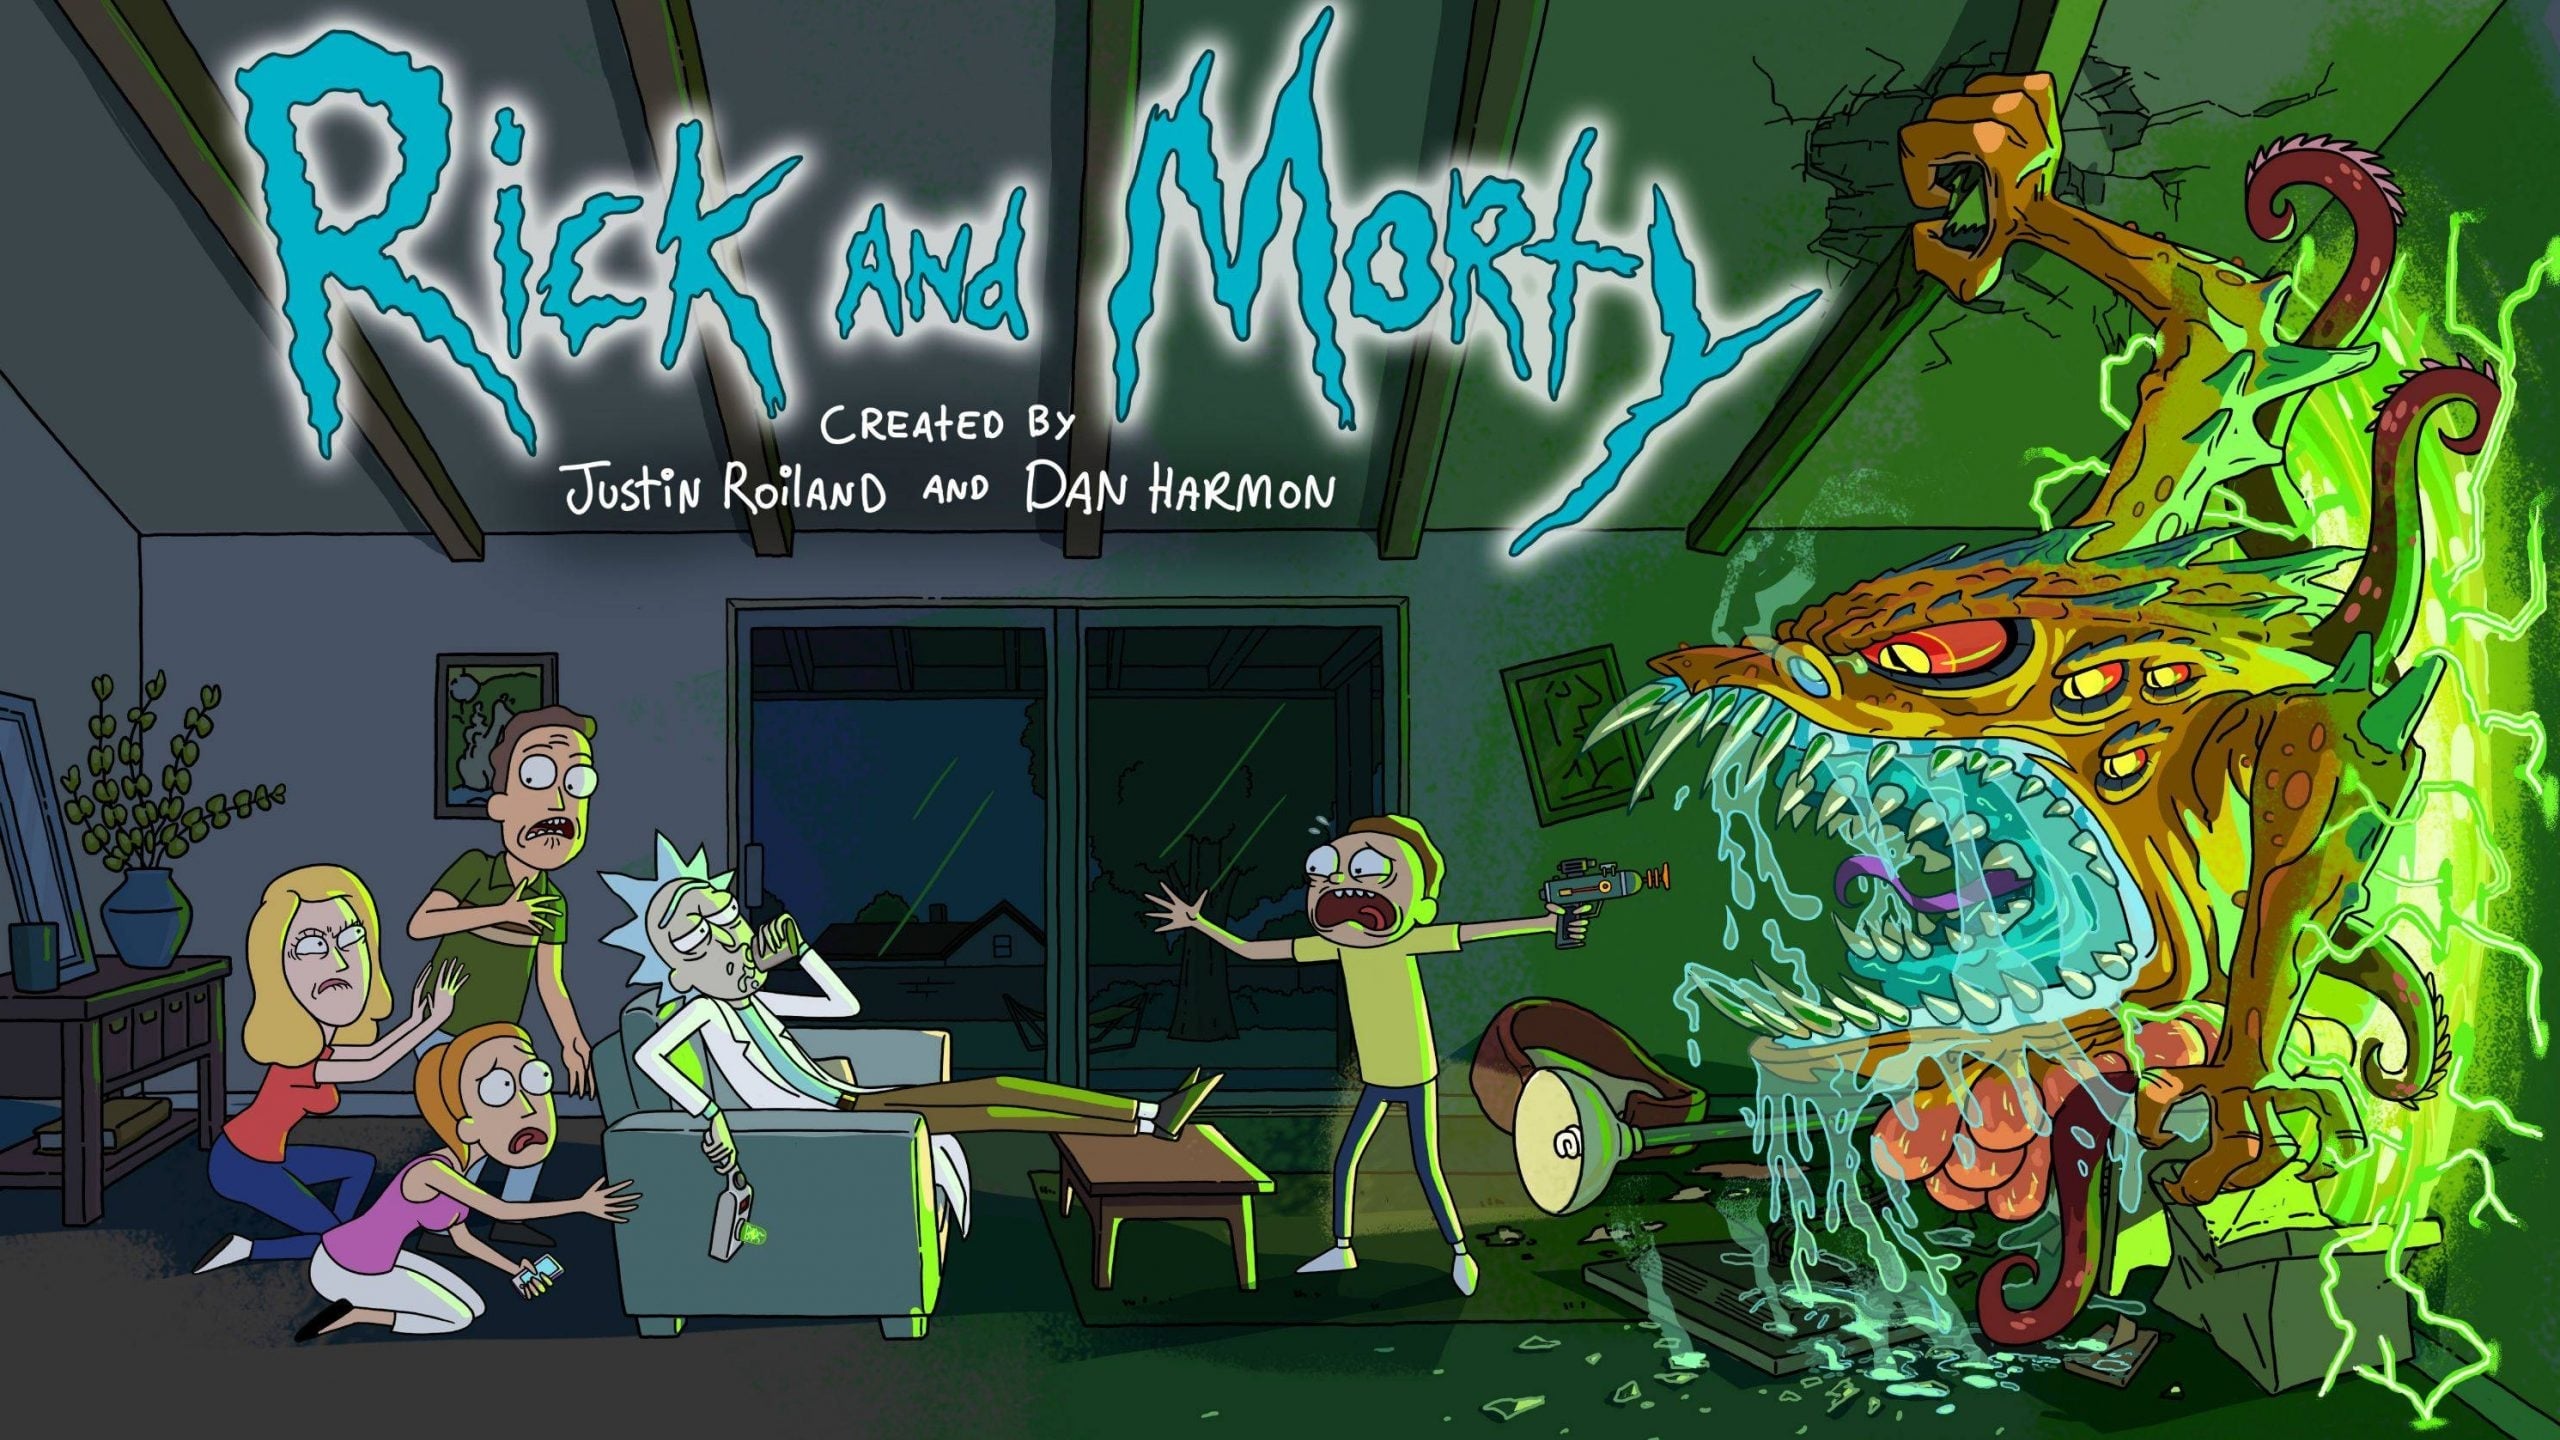 Rick và Morty (Phần 2)